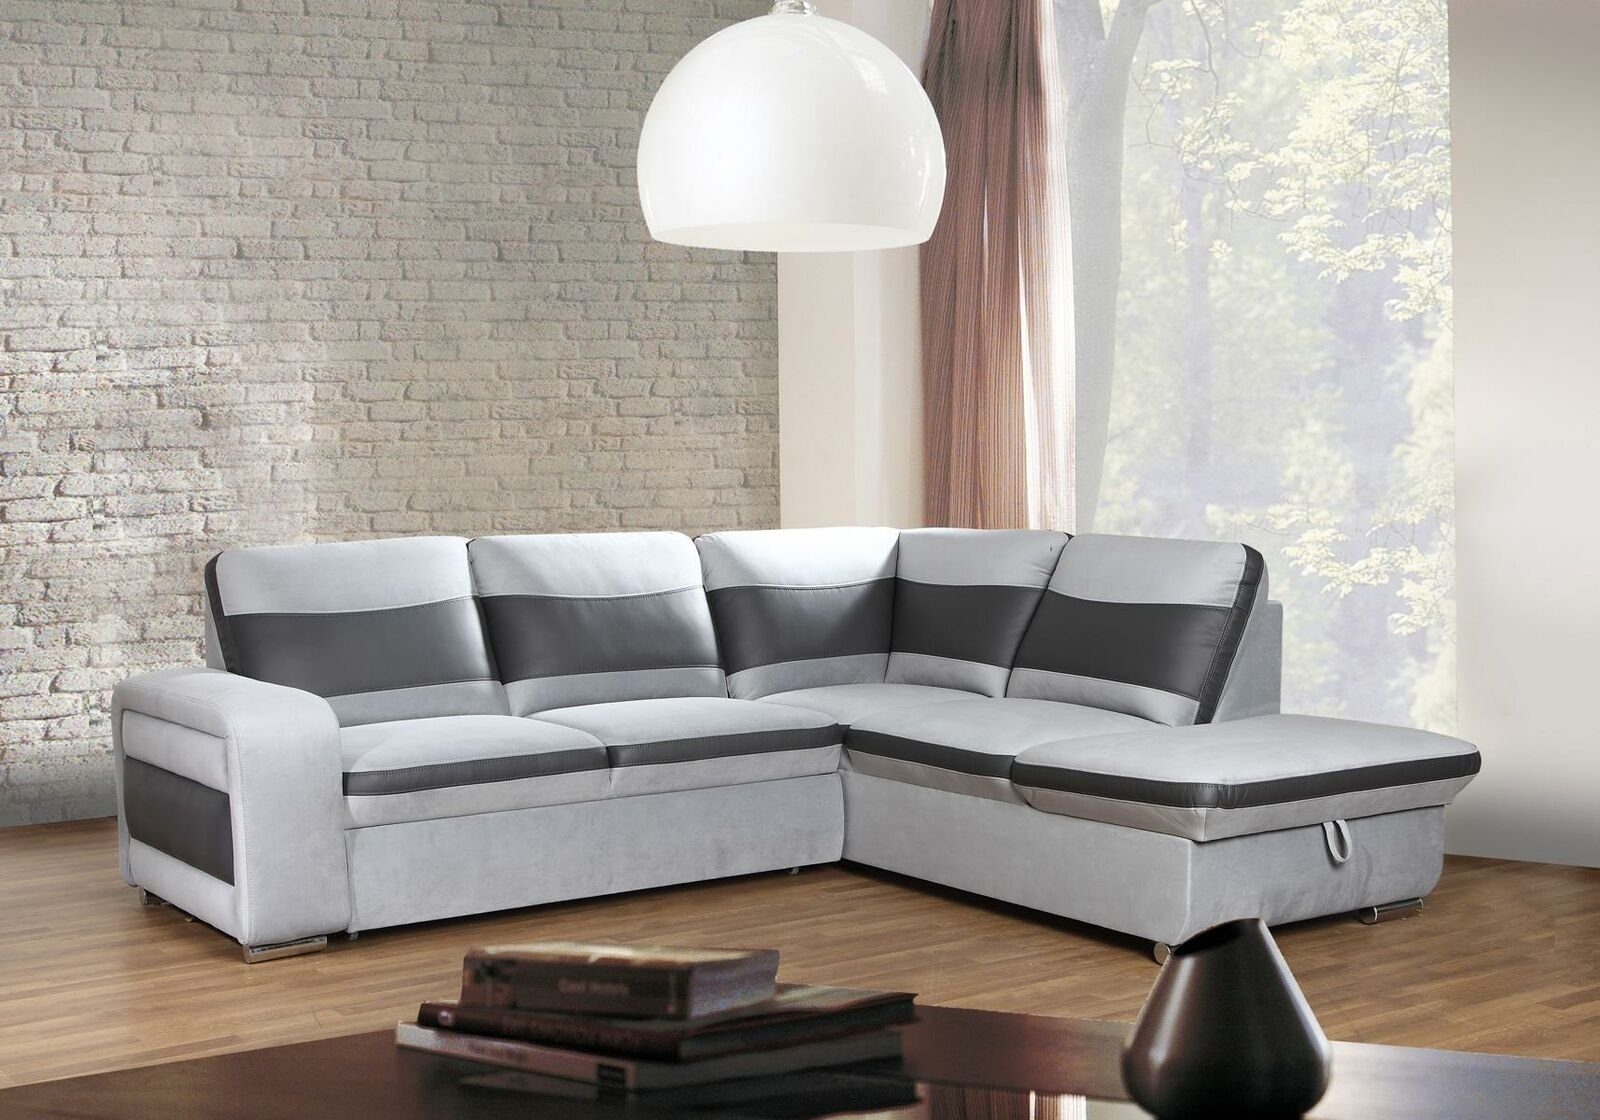 JVmoebel Sofa Weißes modernes Ecksofa Europe Couch Made Luxus Polstermöbel in Neu